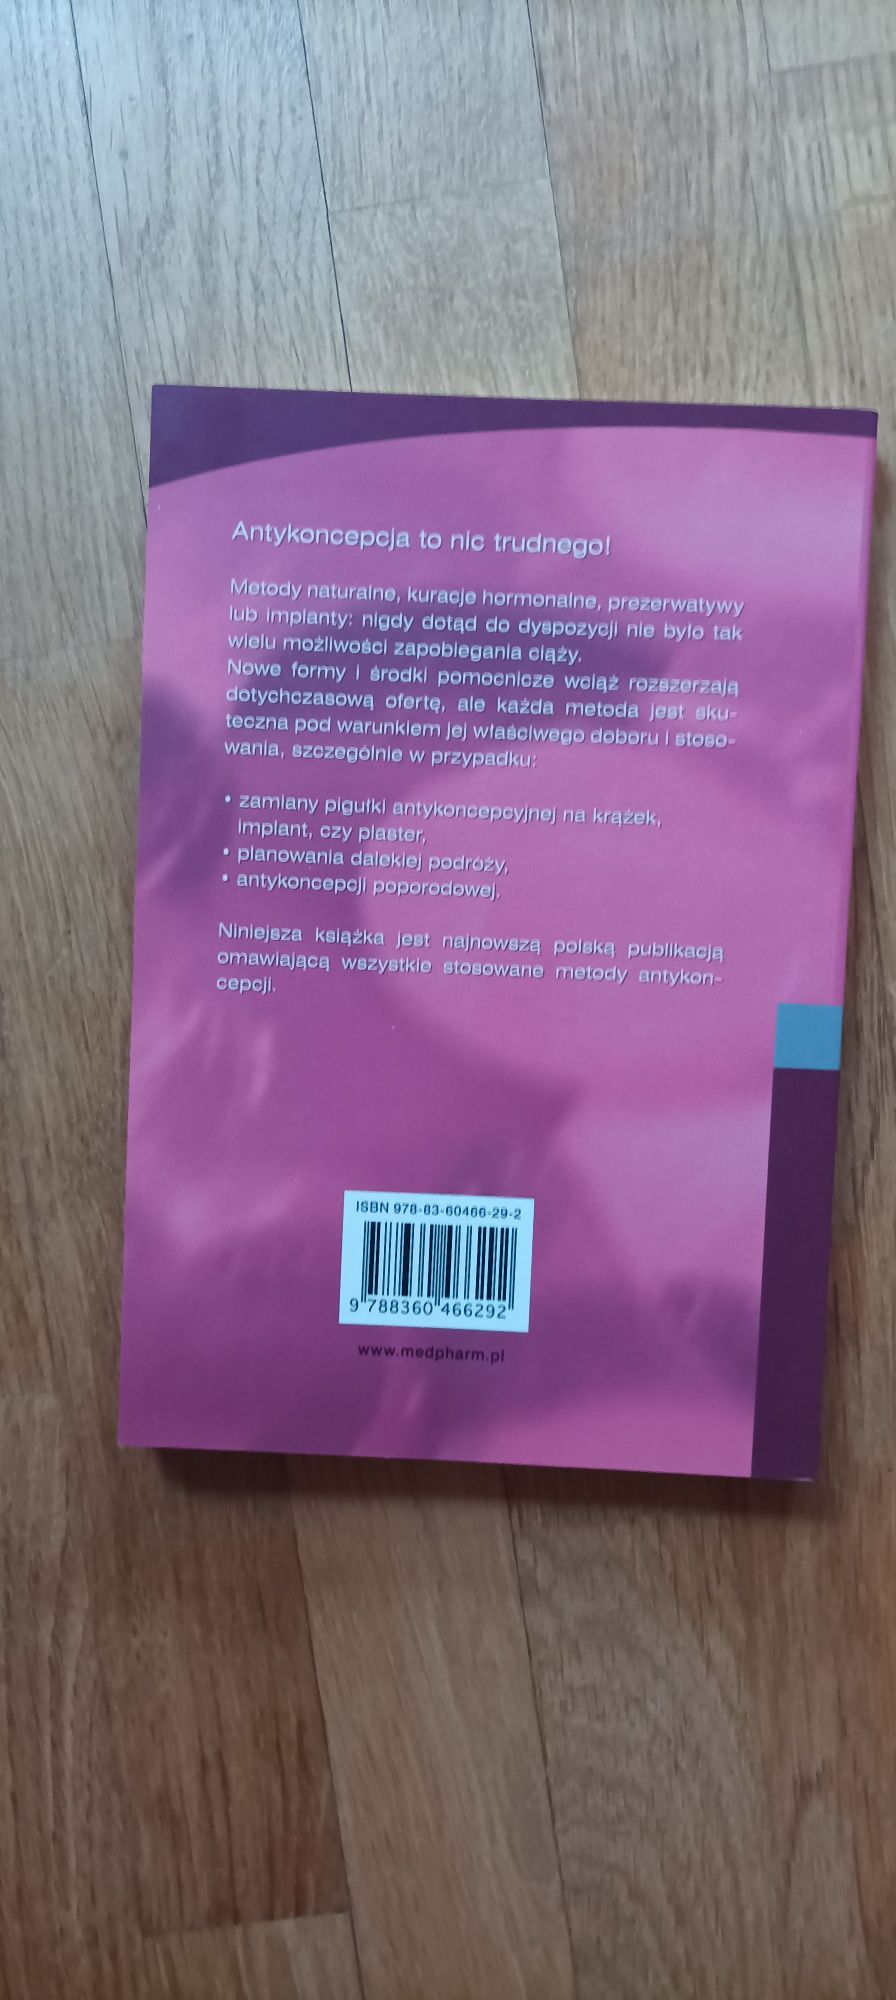 Antykoncepcja MedPharm Polska książka ginekologia